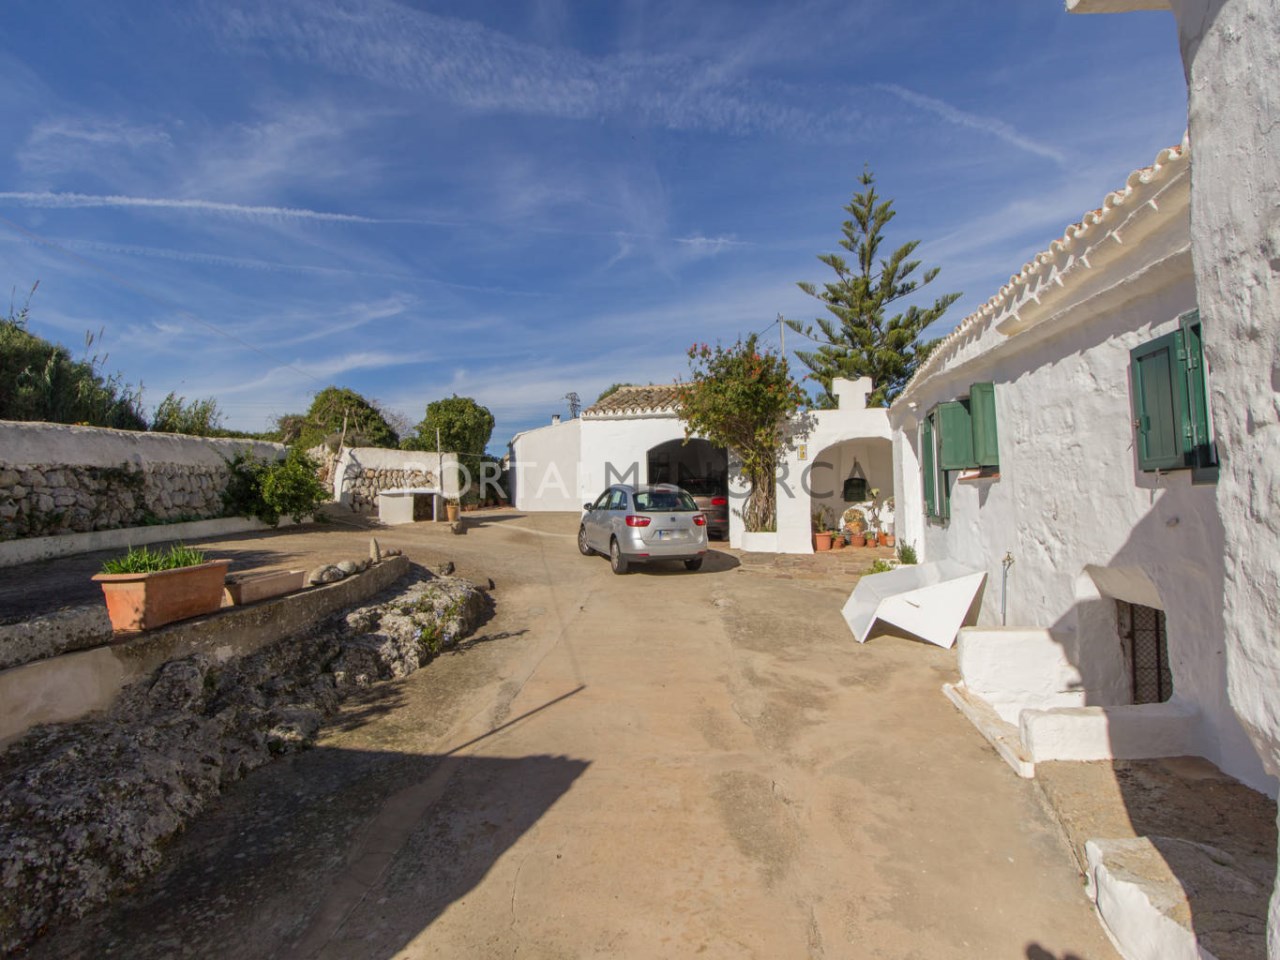 Casa de campo en venta en Menorca - Exterior (13)